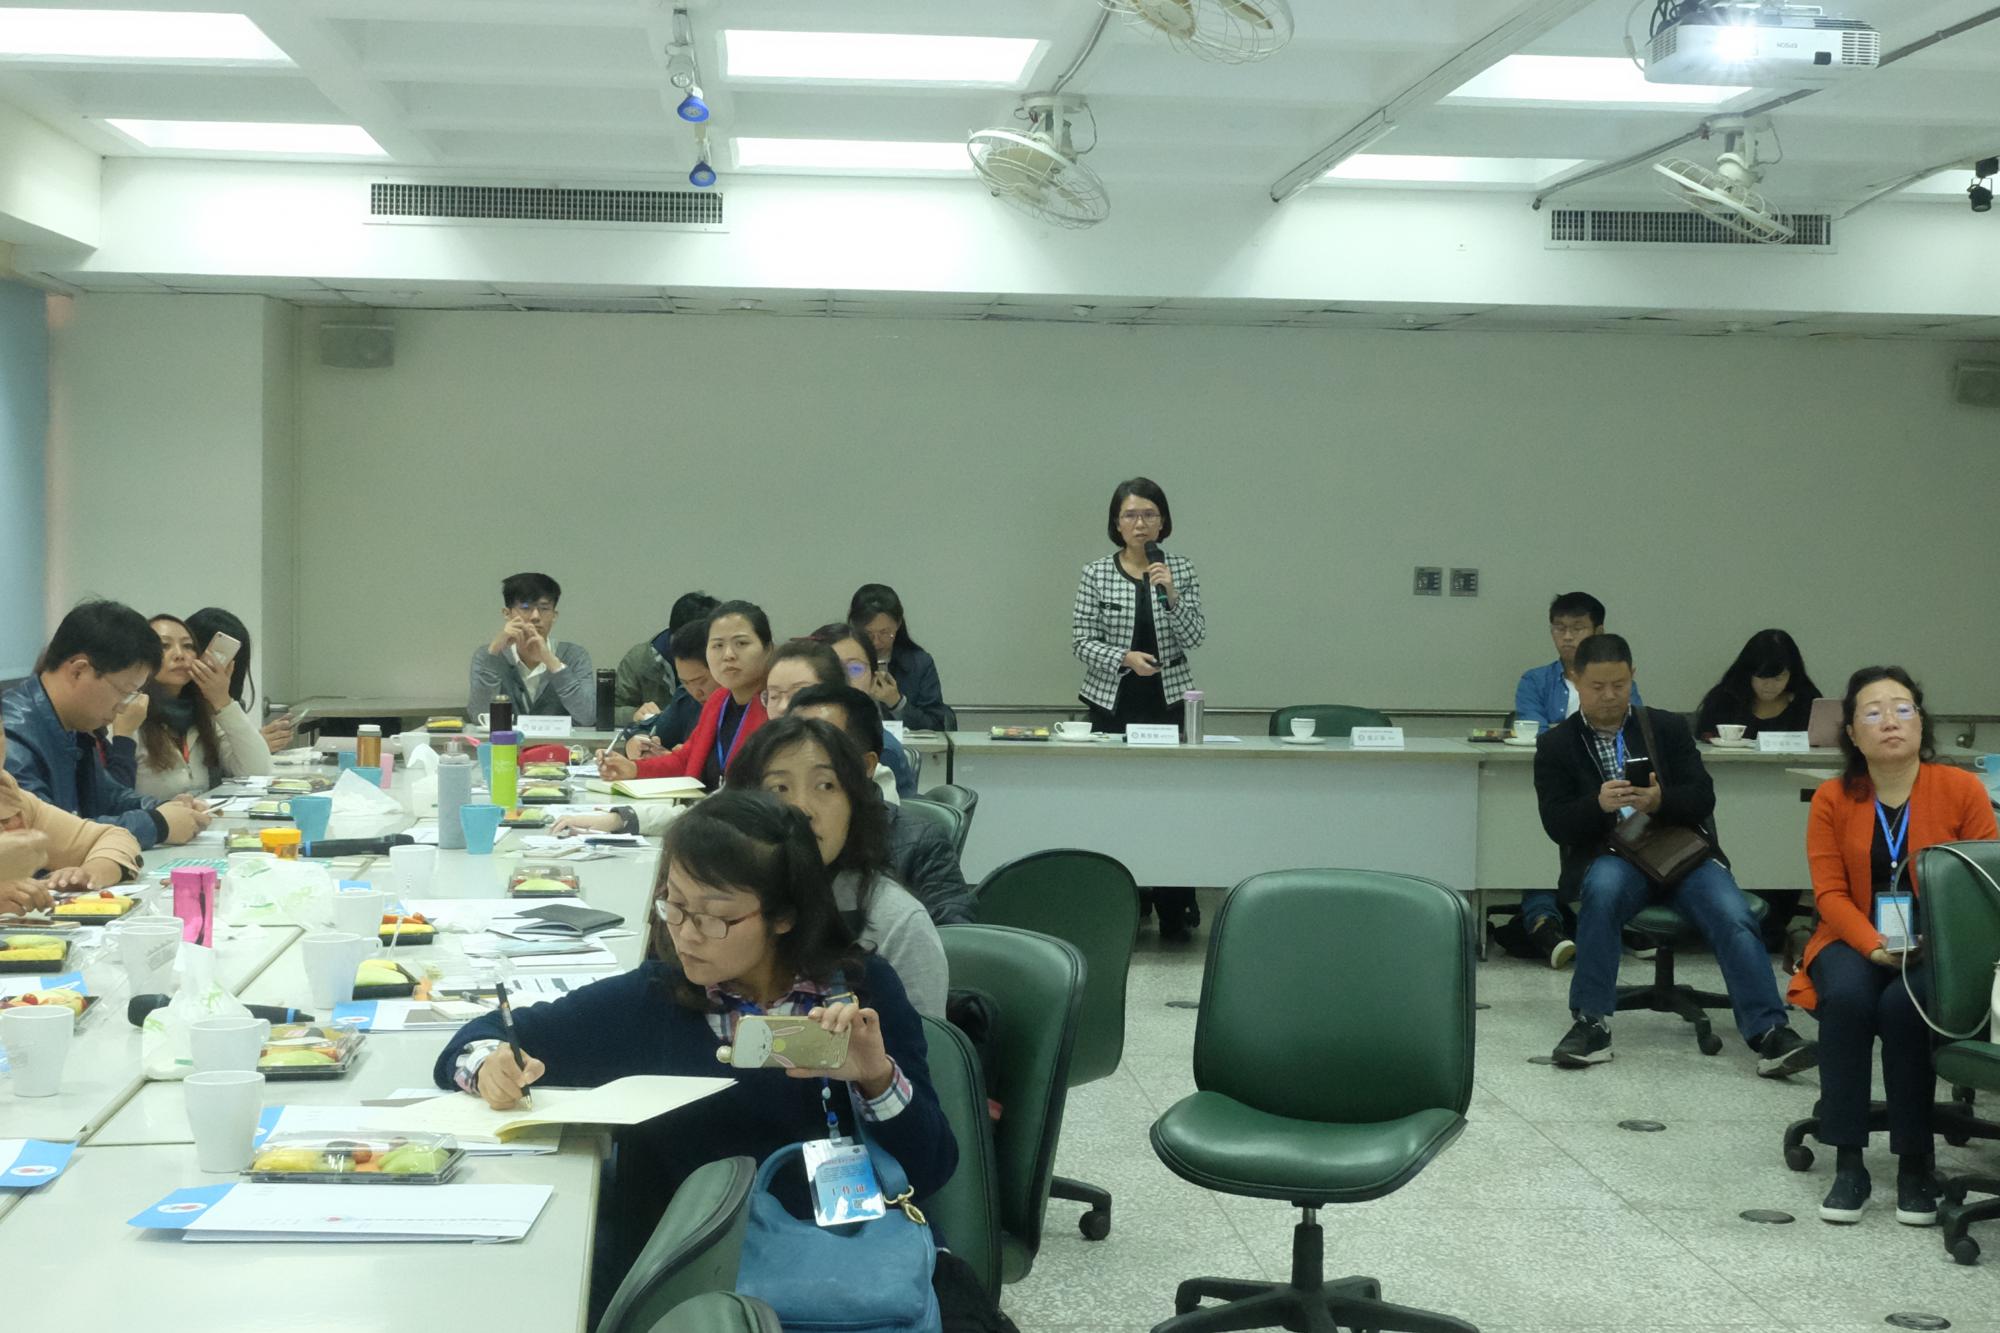 中國大陸全納教育台灣考察參訪團一行30人蒞臨本中心參訪活動照片